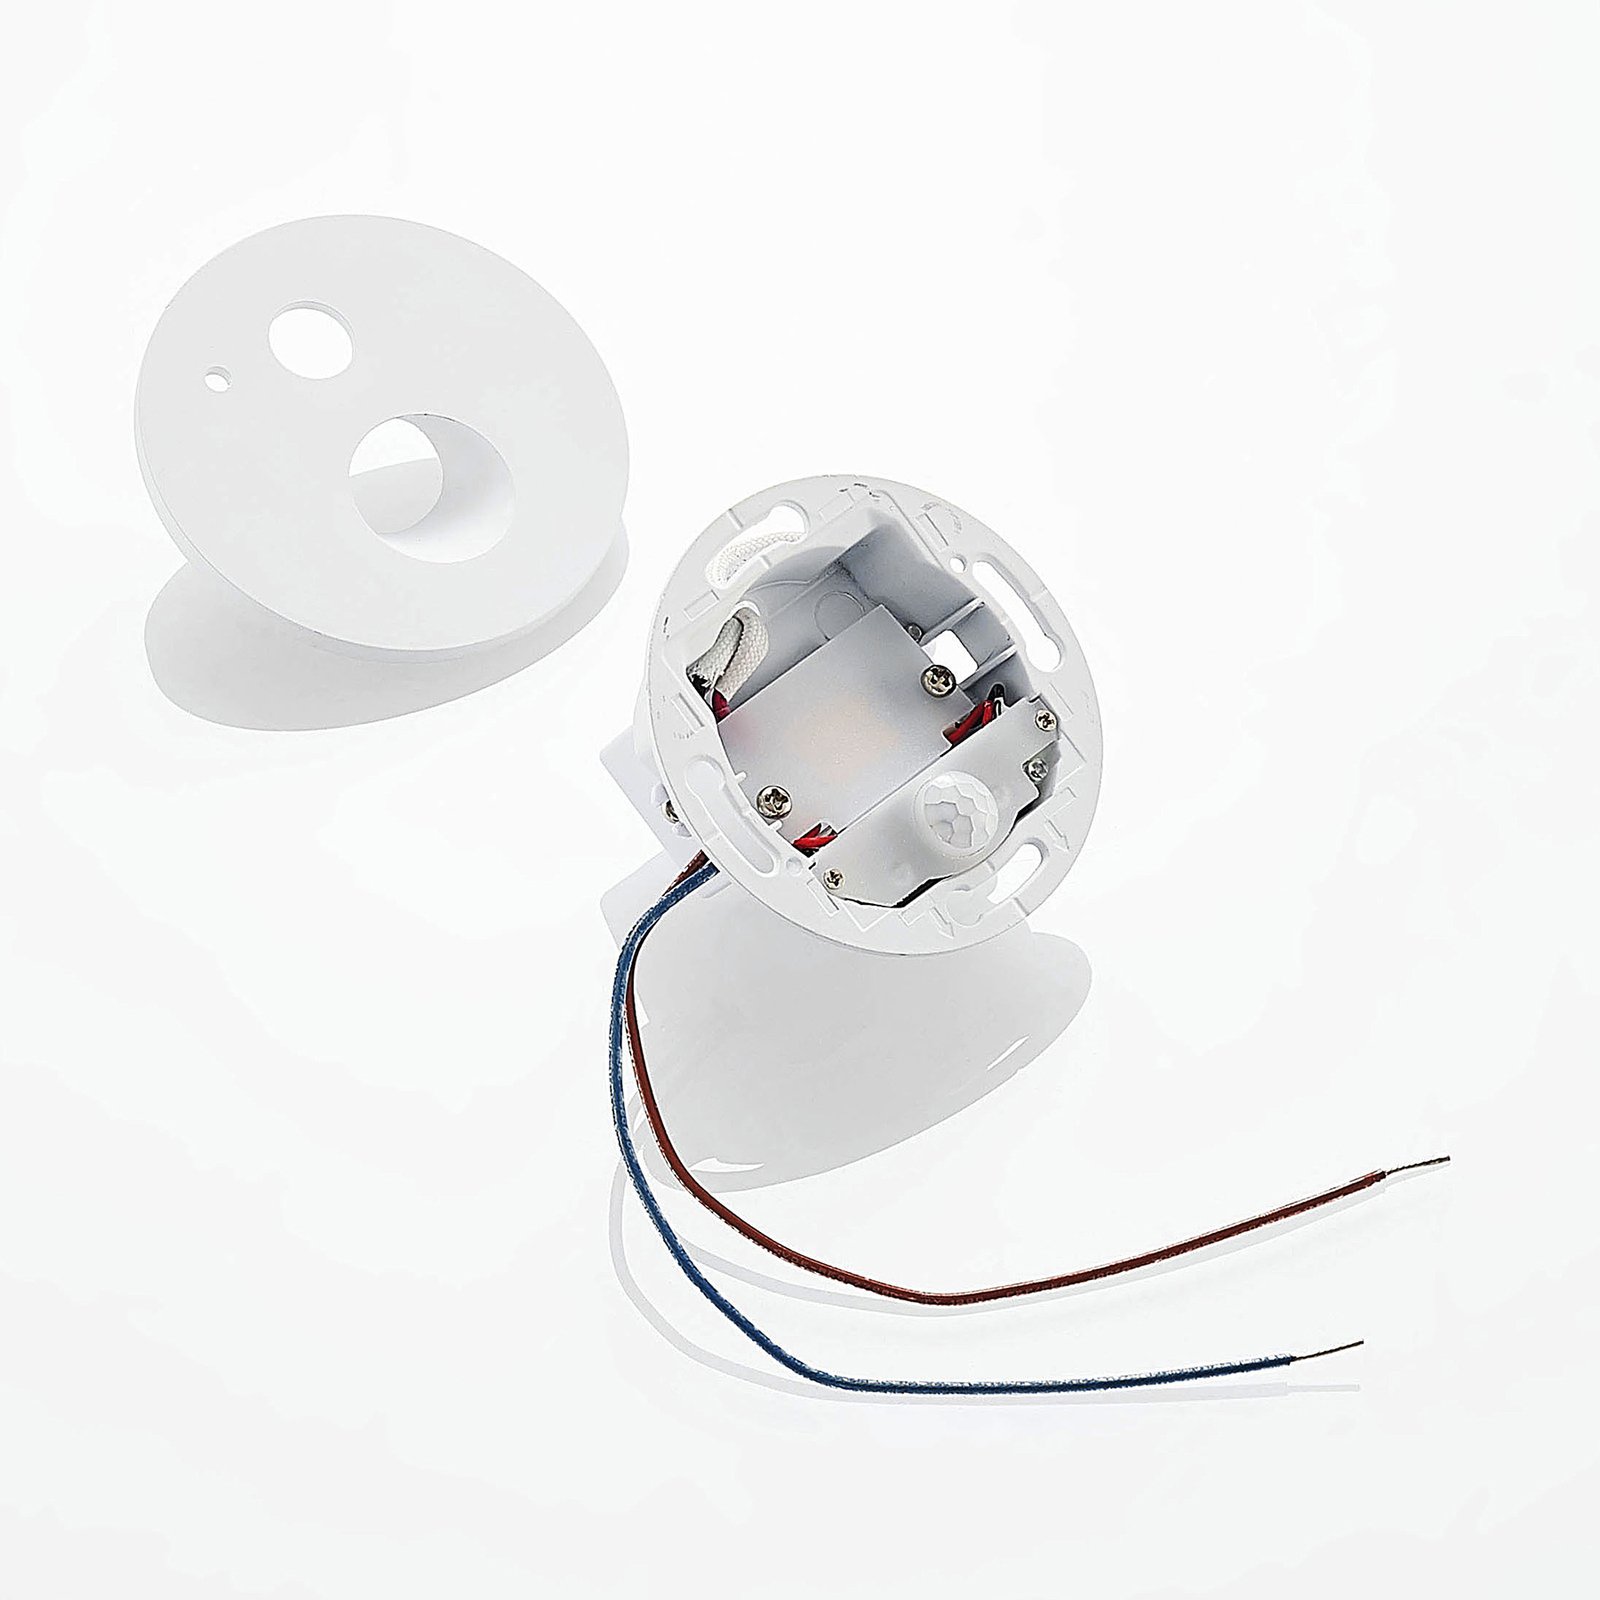 Arcchio Neru -LED-uppovalaisin pyöreä, valkoinen